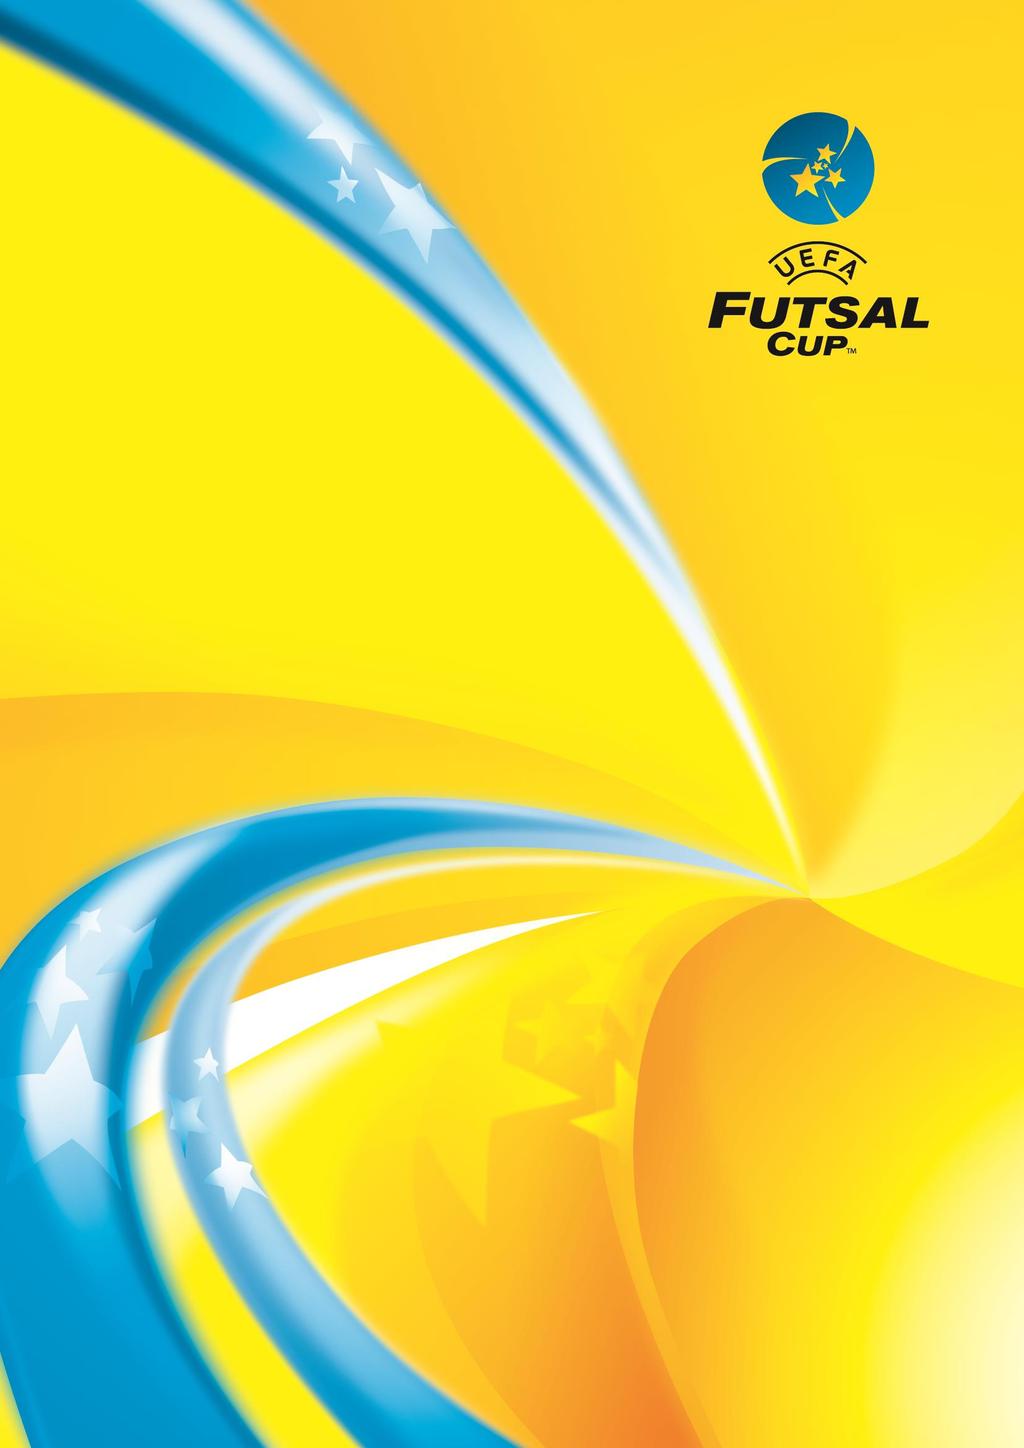 UEFA Futsal Cup 2015/16 DRAW